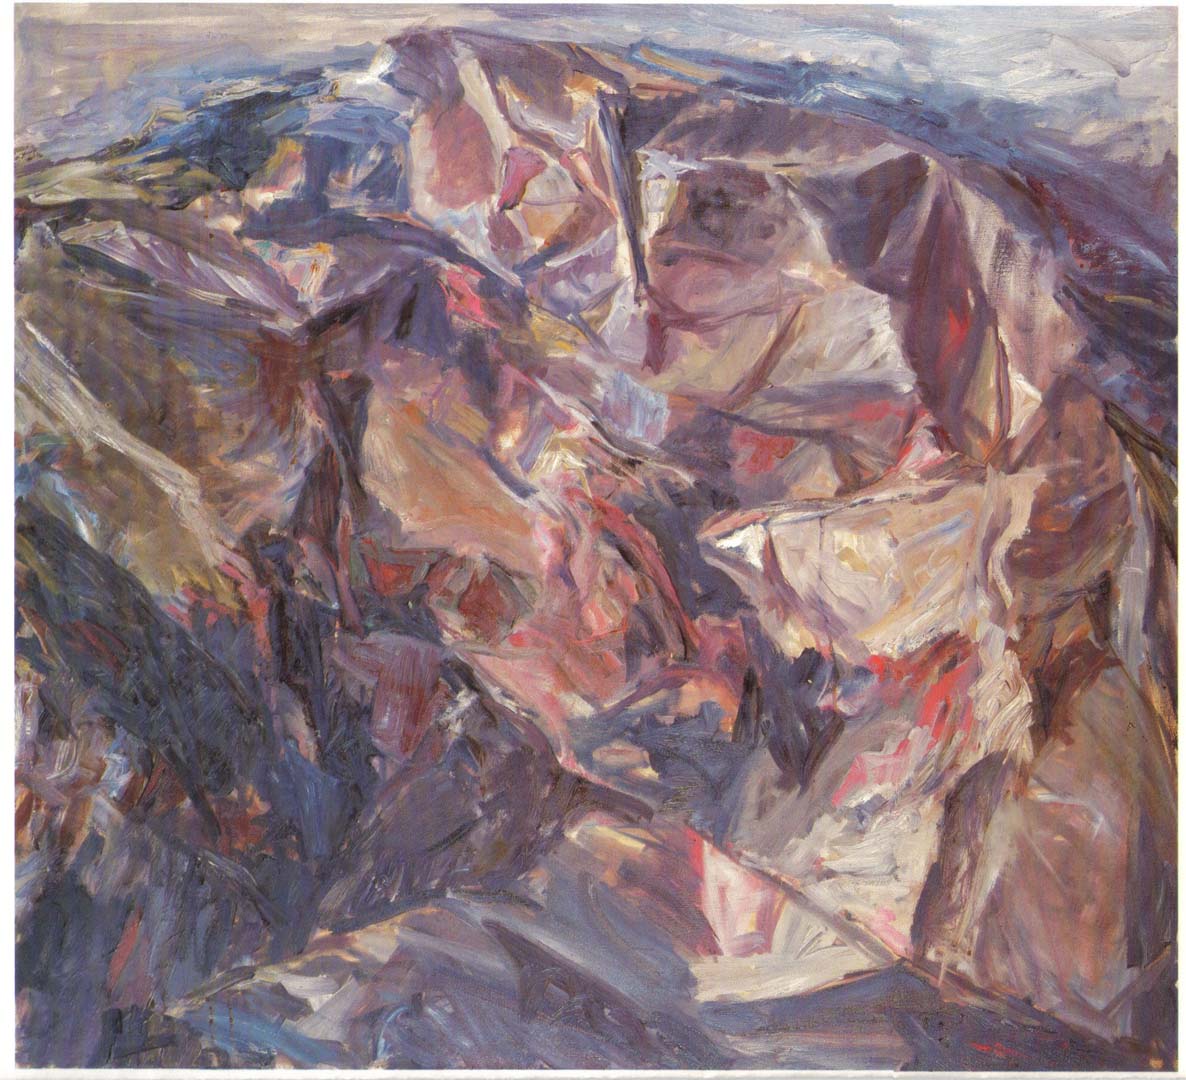 1955 Moonlit Landscape Oil on Canvas 44 x 48